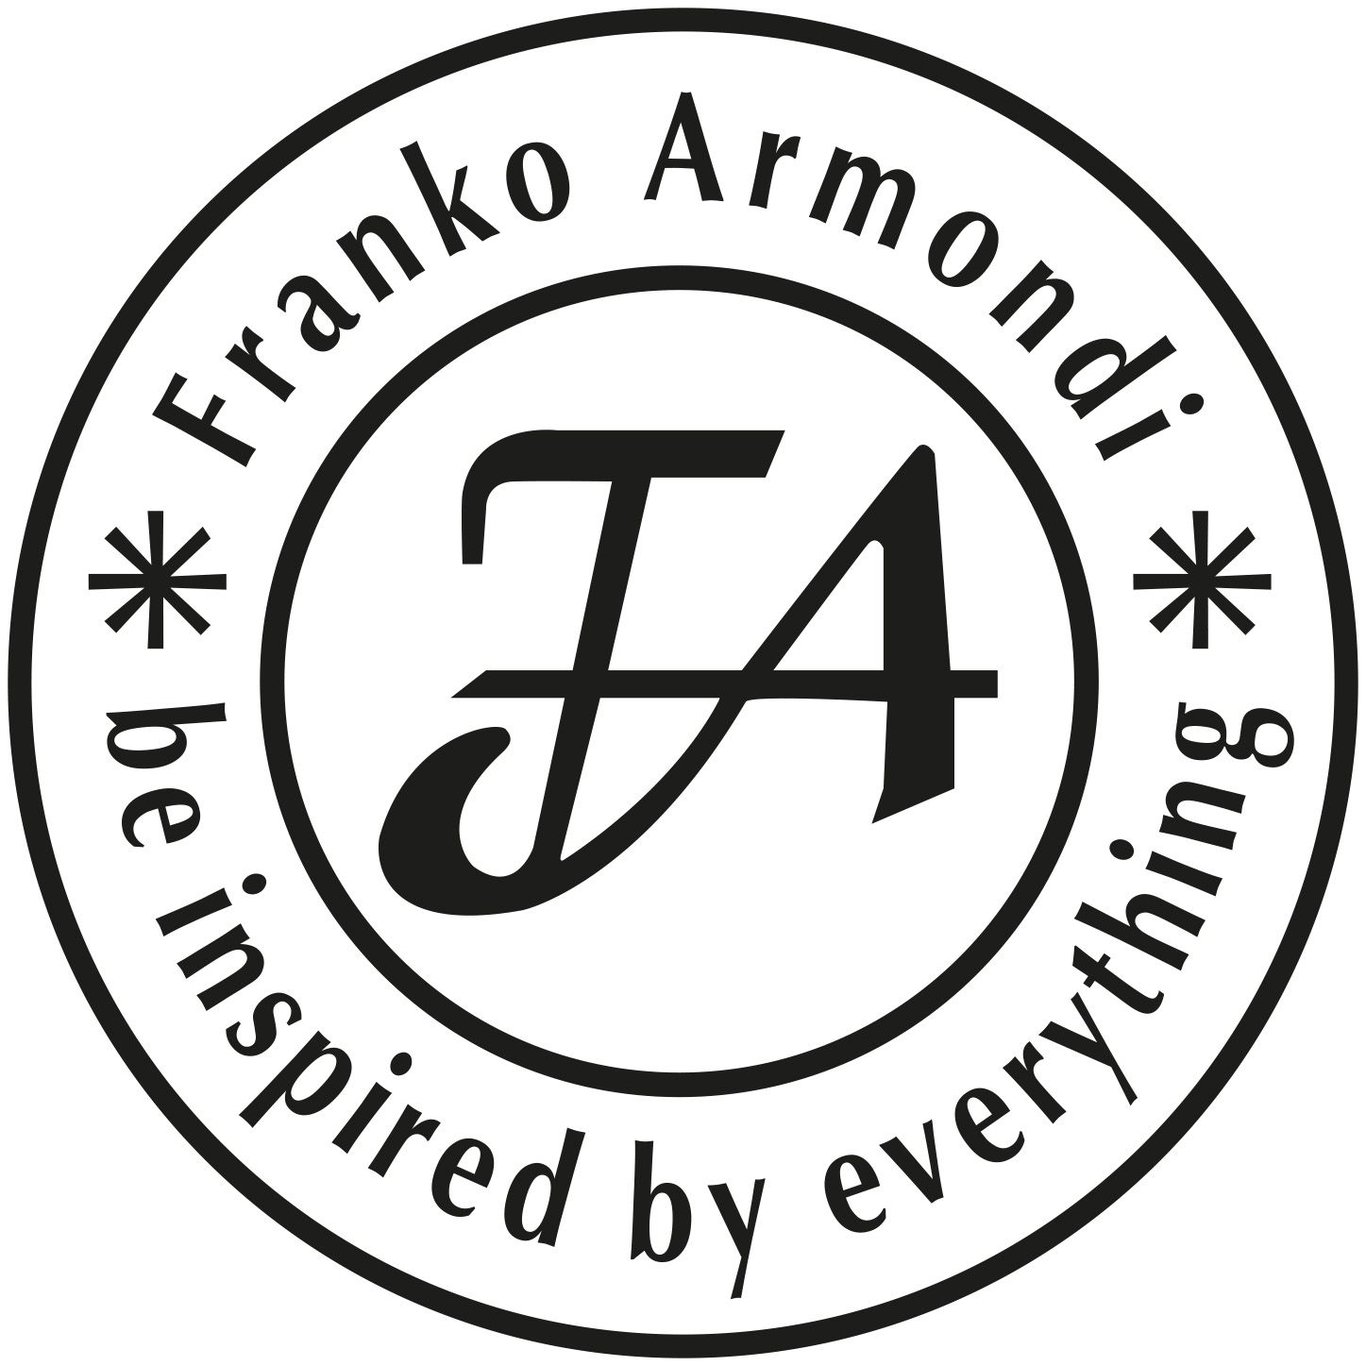 Franko Armondi